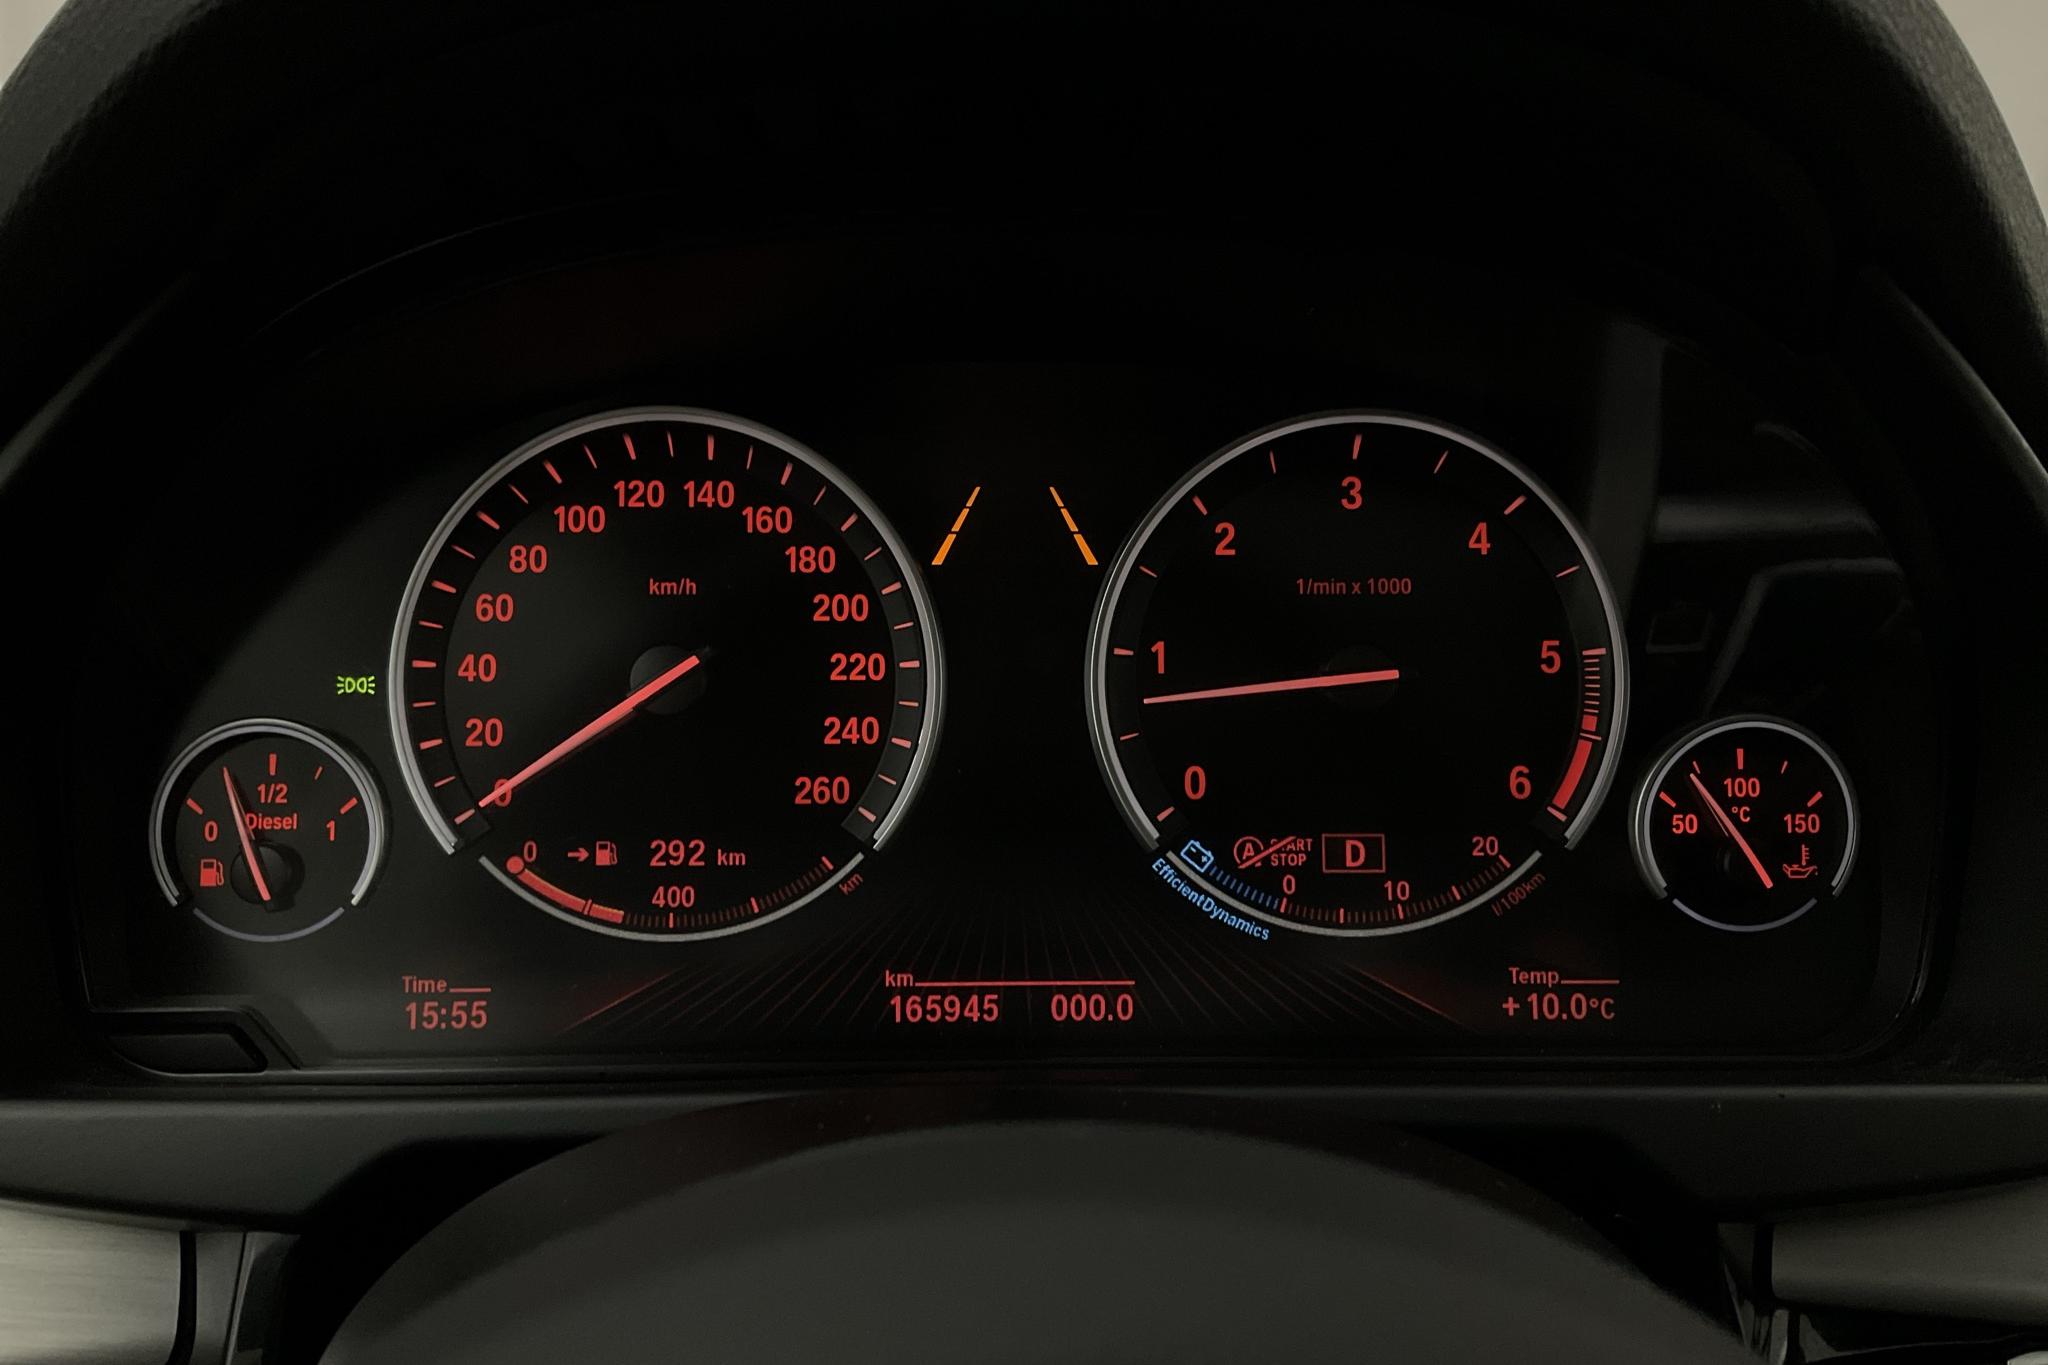 BMW X5 xDrive40d, F15 (313hk) - 165 950 km - Automatic - black - 2018